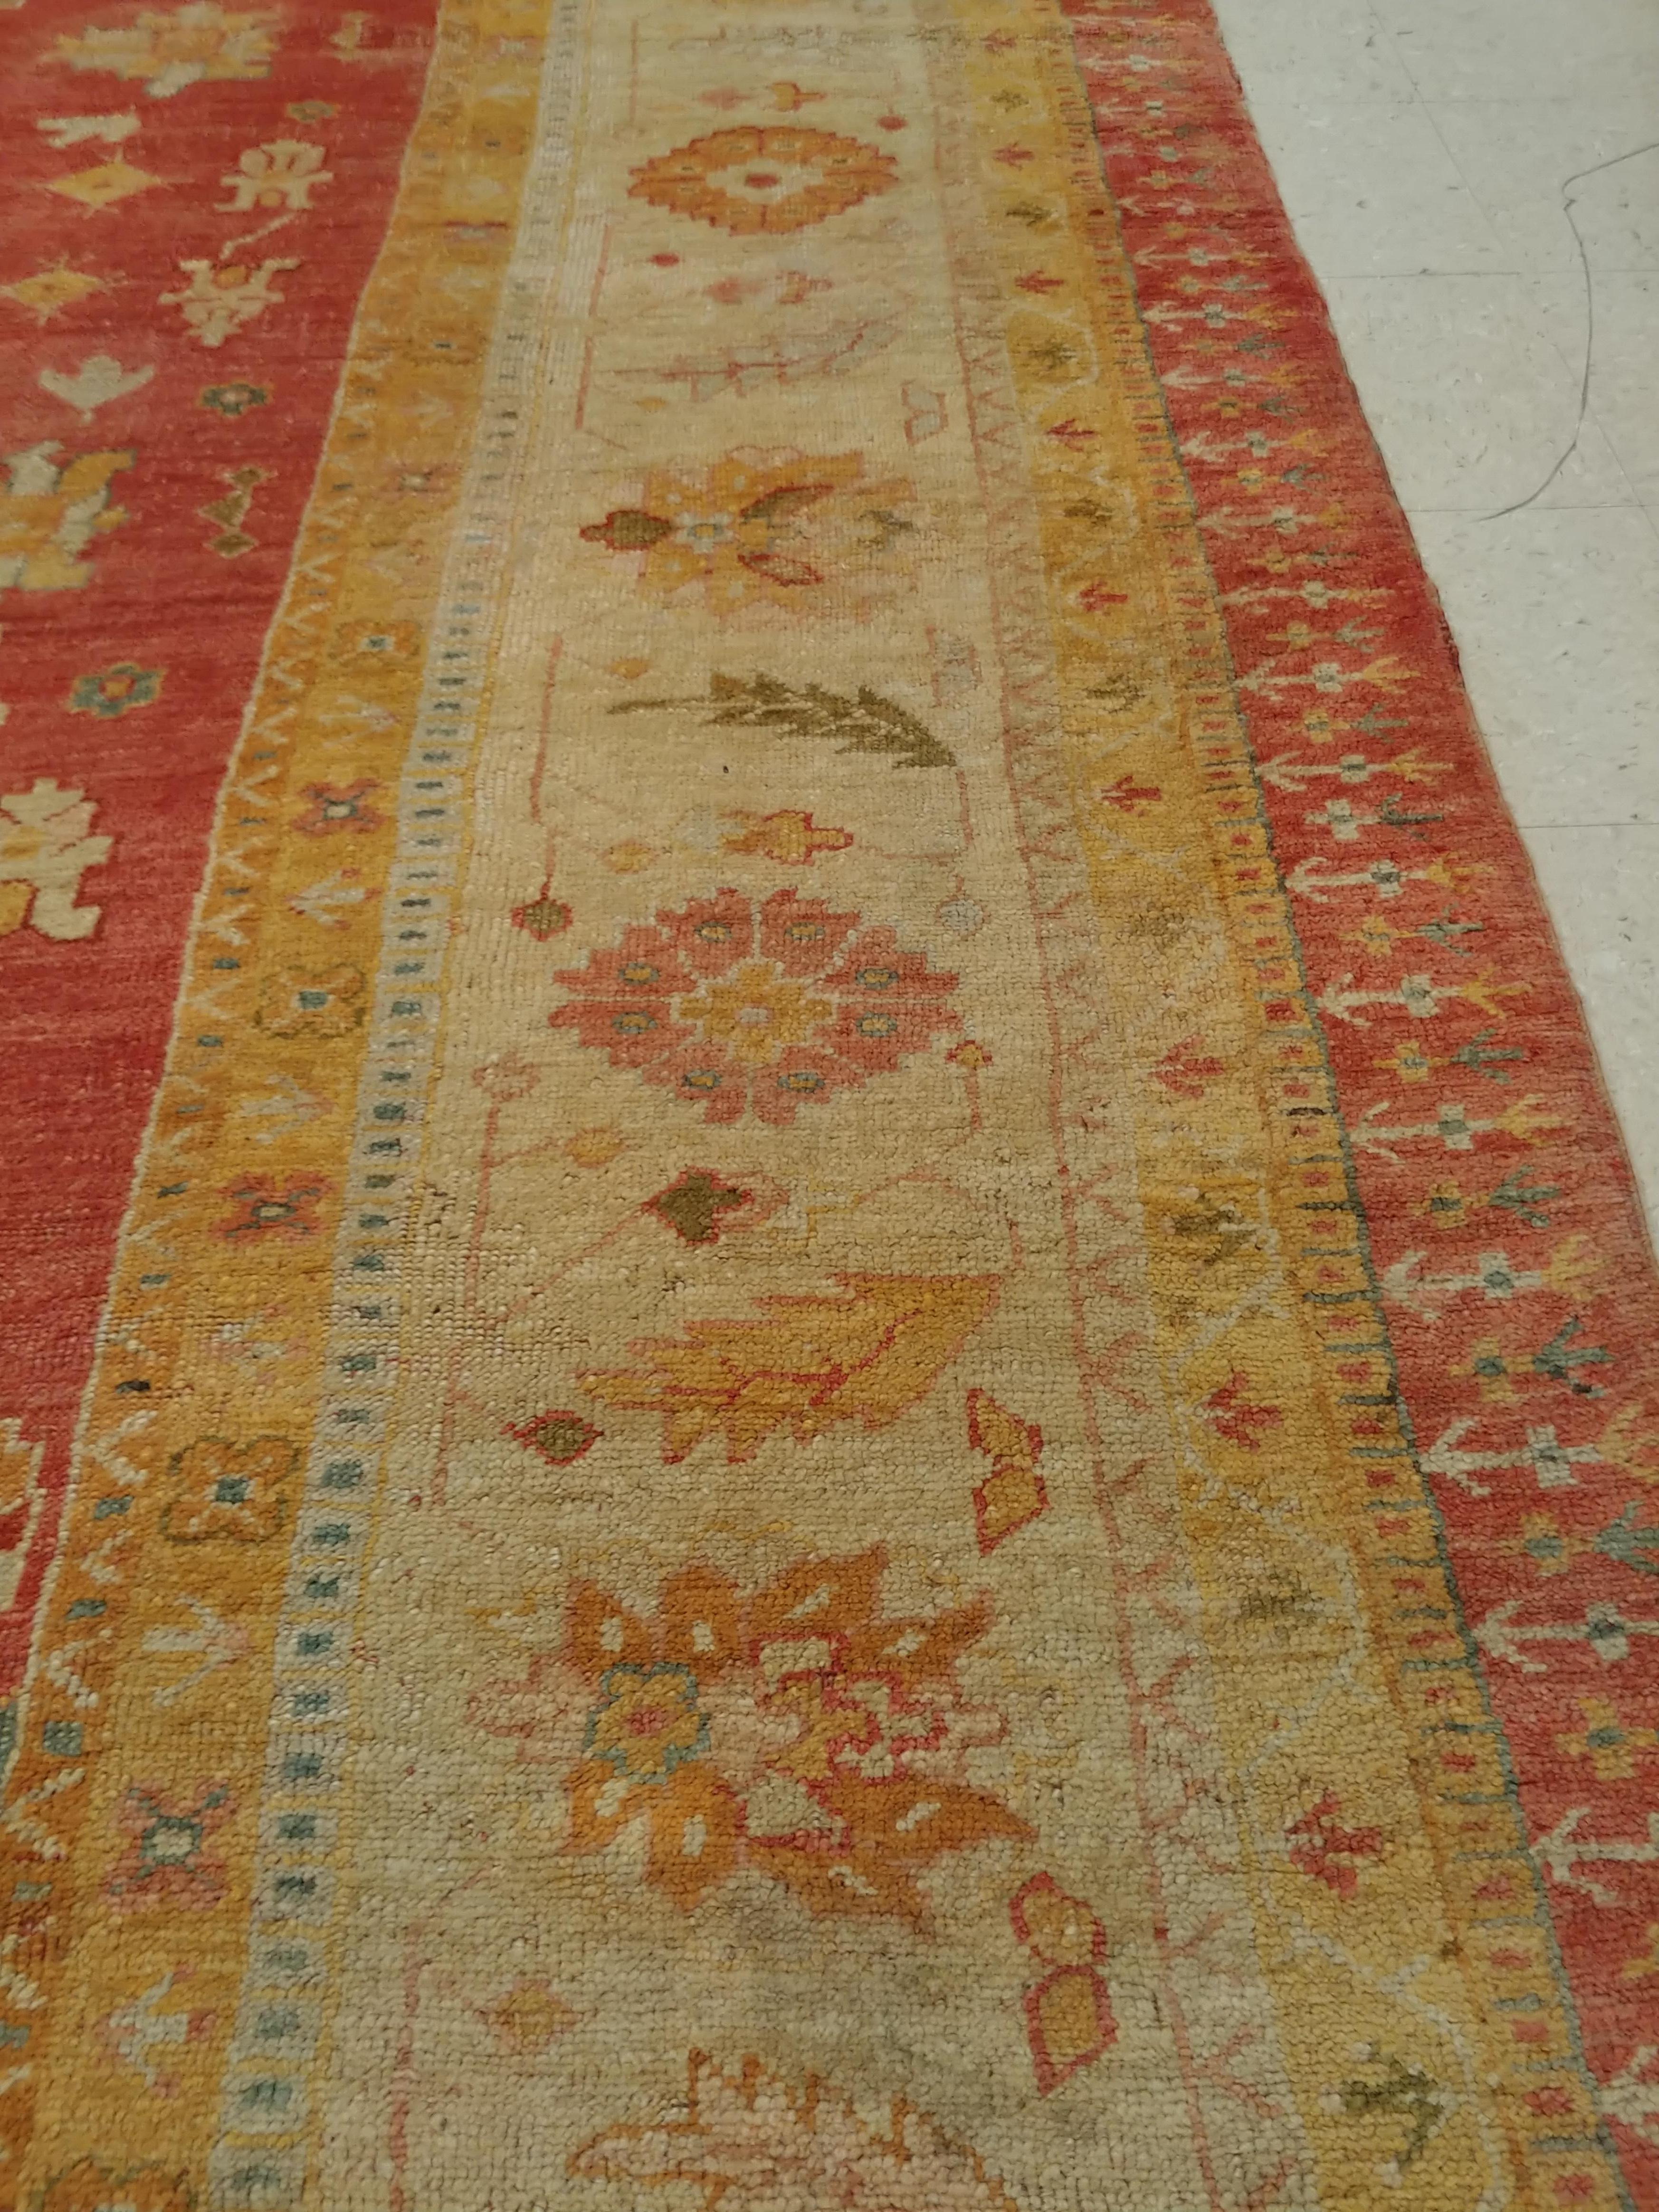 Antique Oushak Carpet, Handmade Turkish Oriental Rug, Beige, Coral, Light Blue For Sale 3